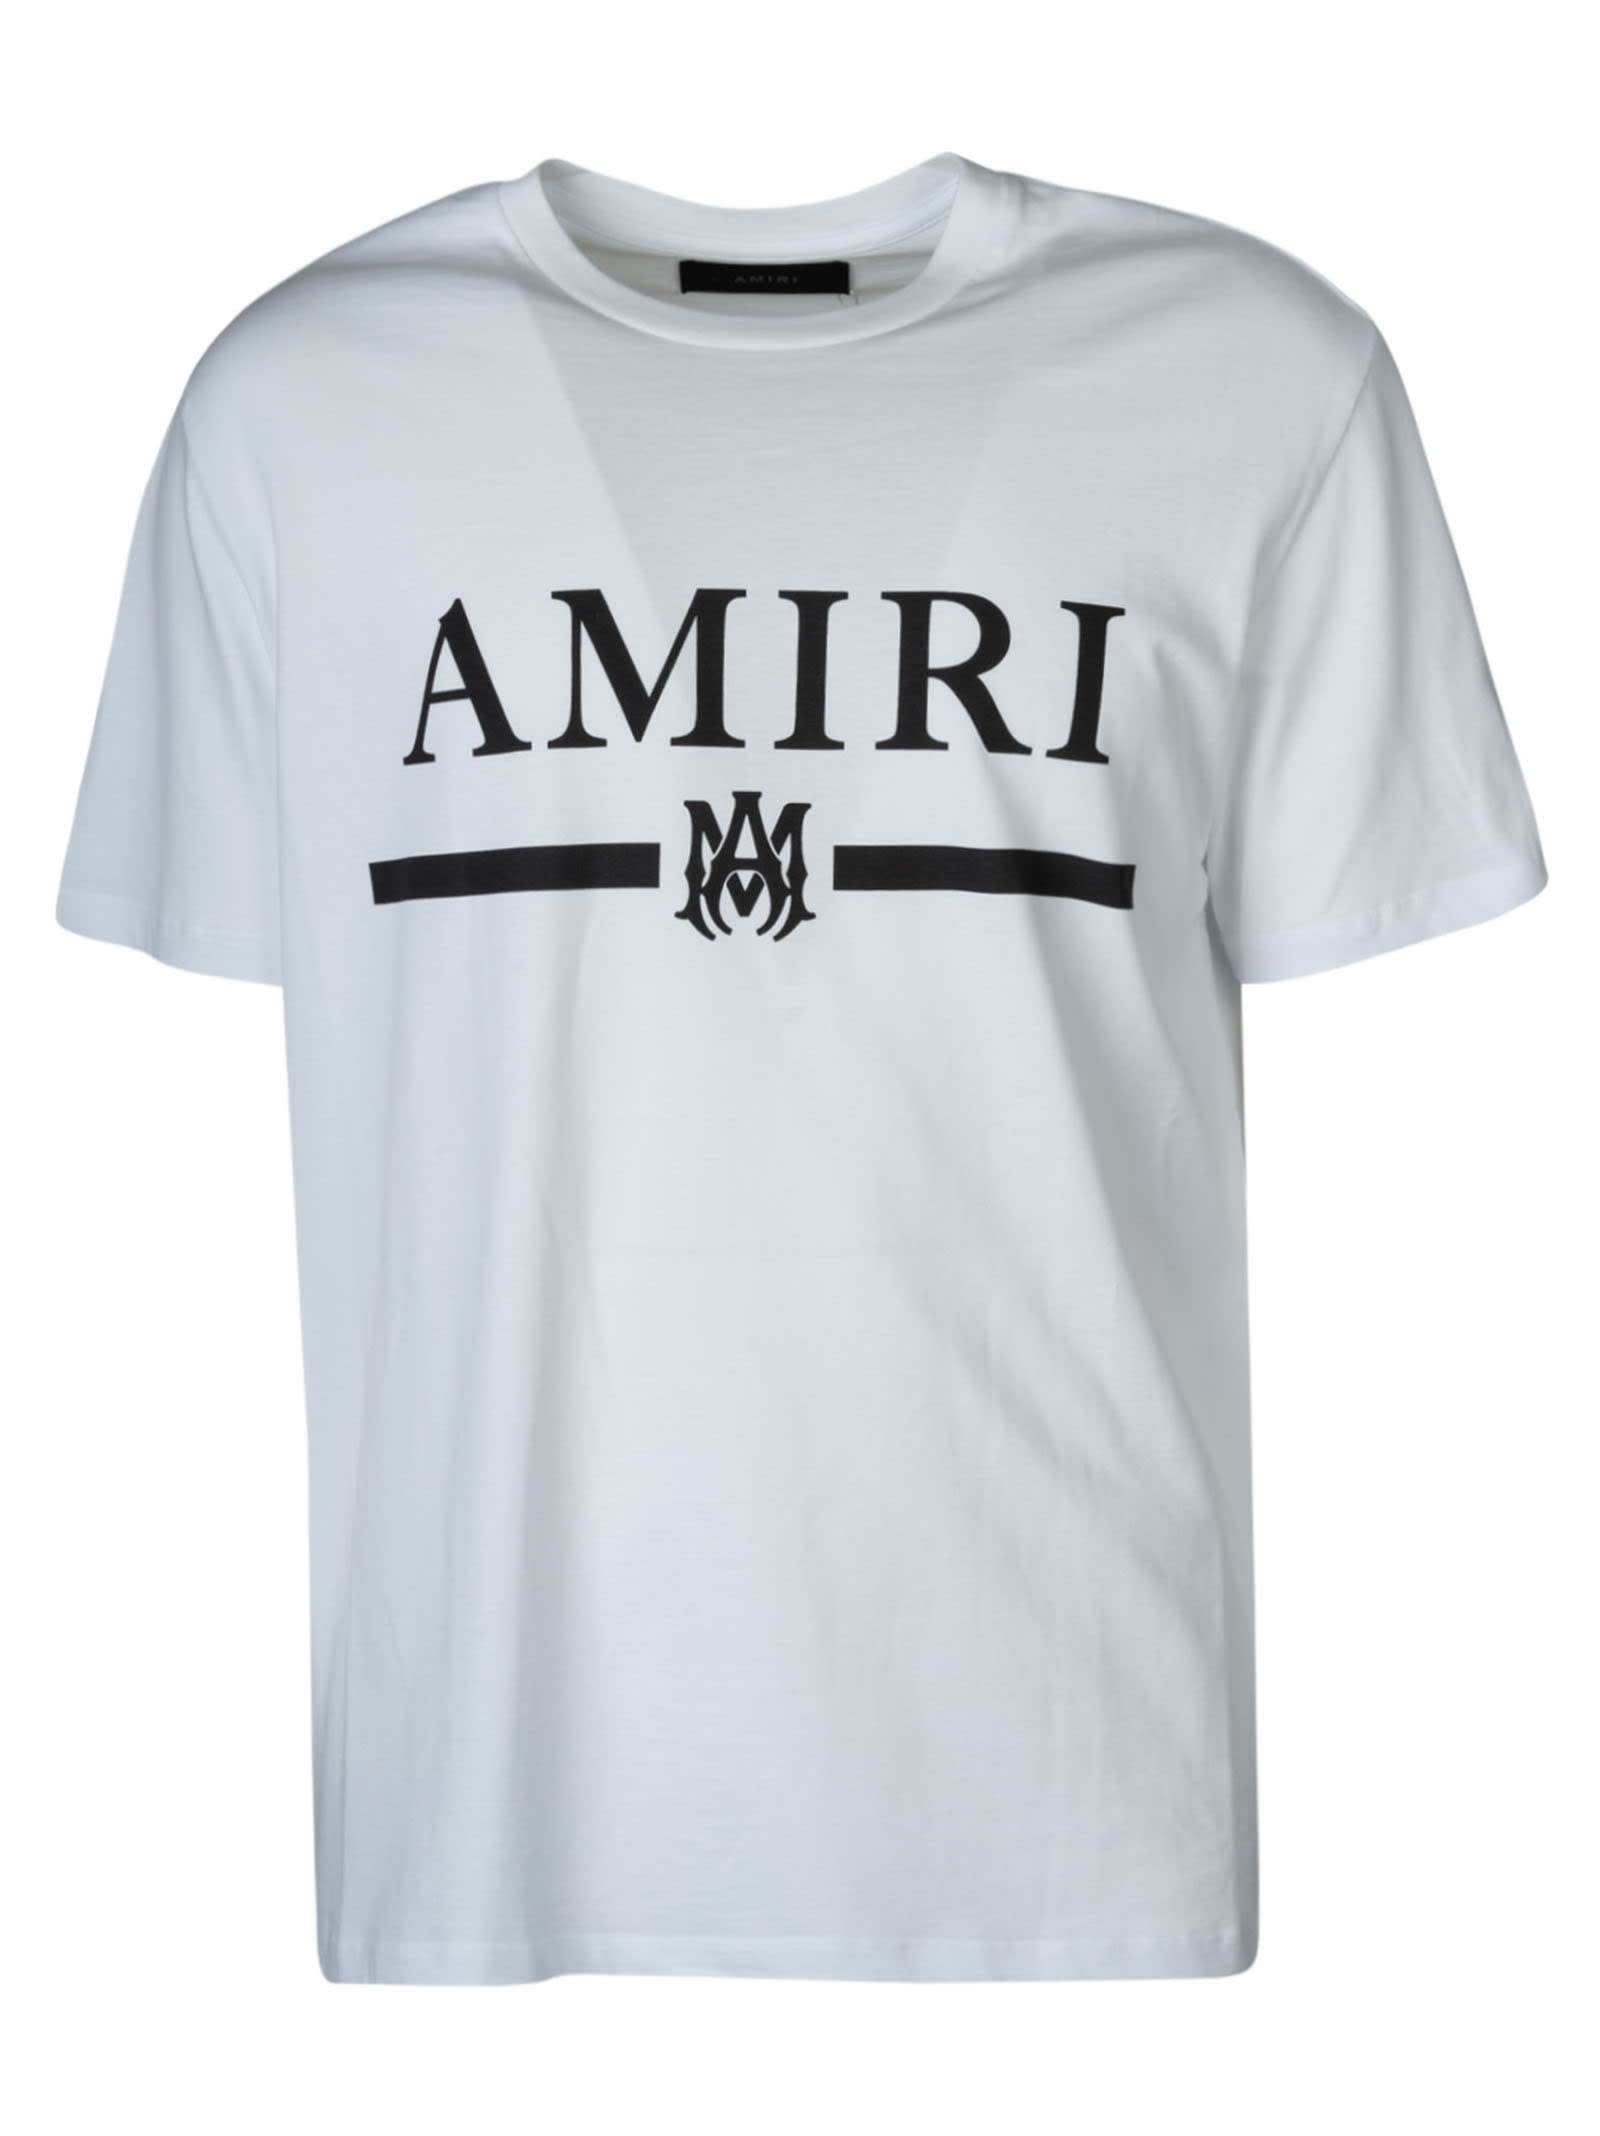 AMIRI Ma Bar T-shirt